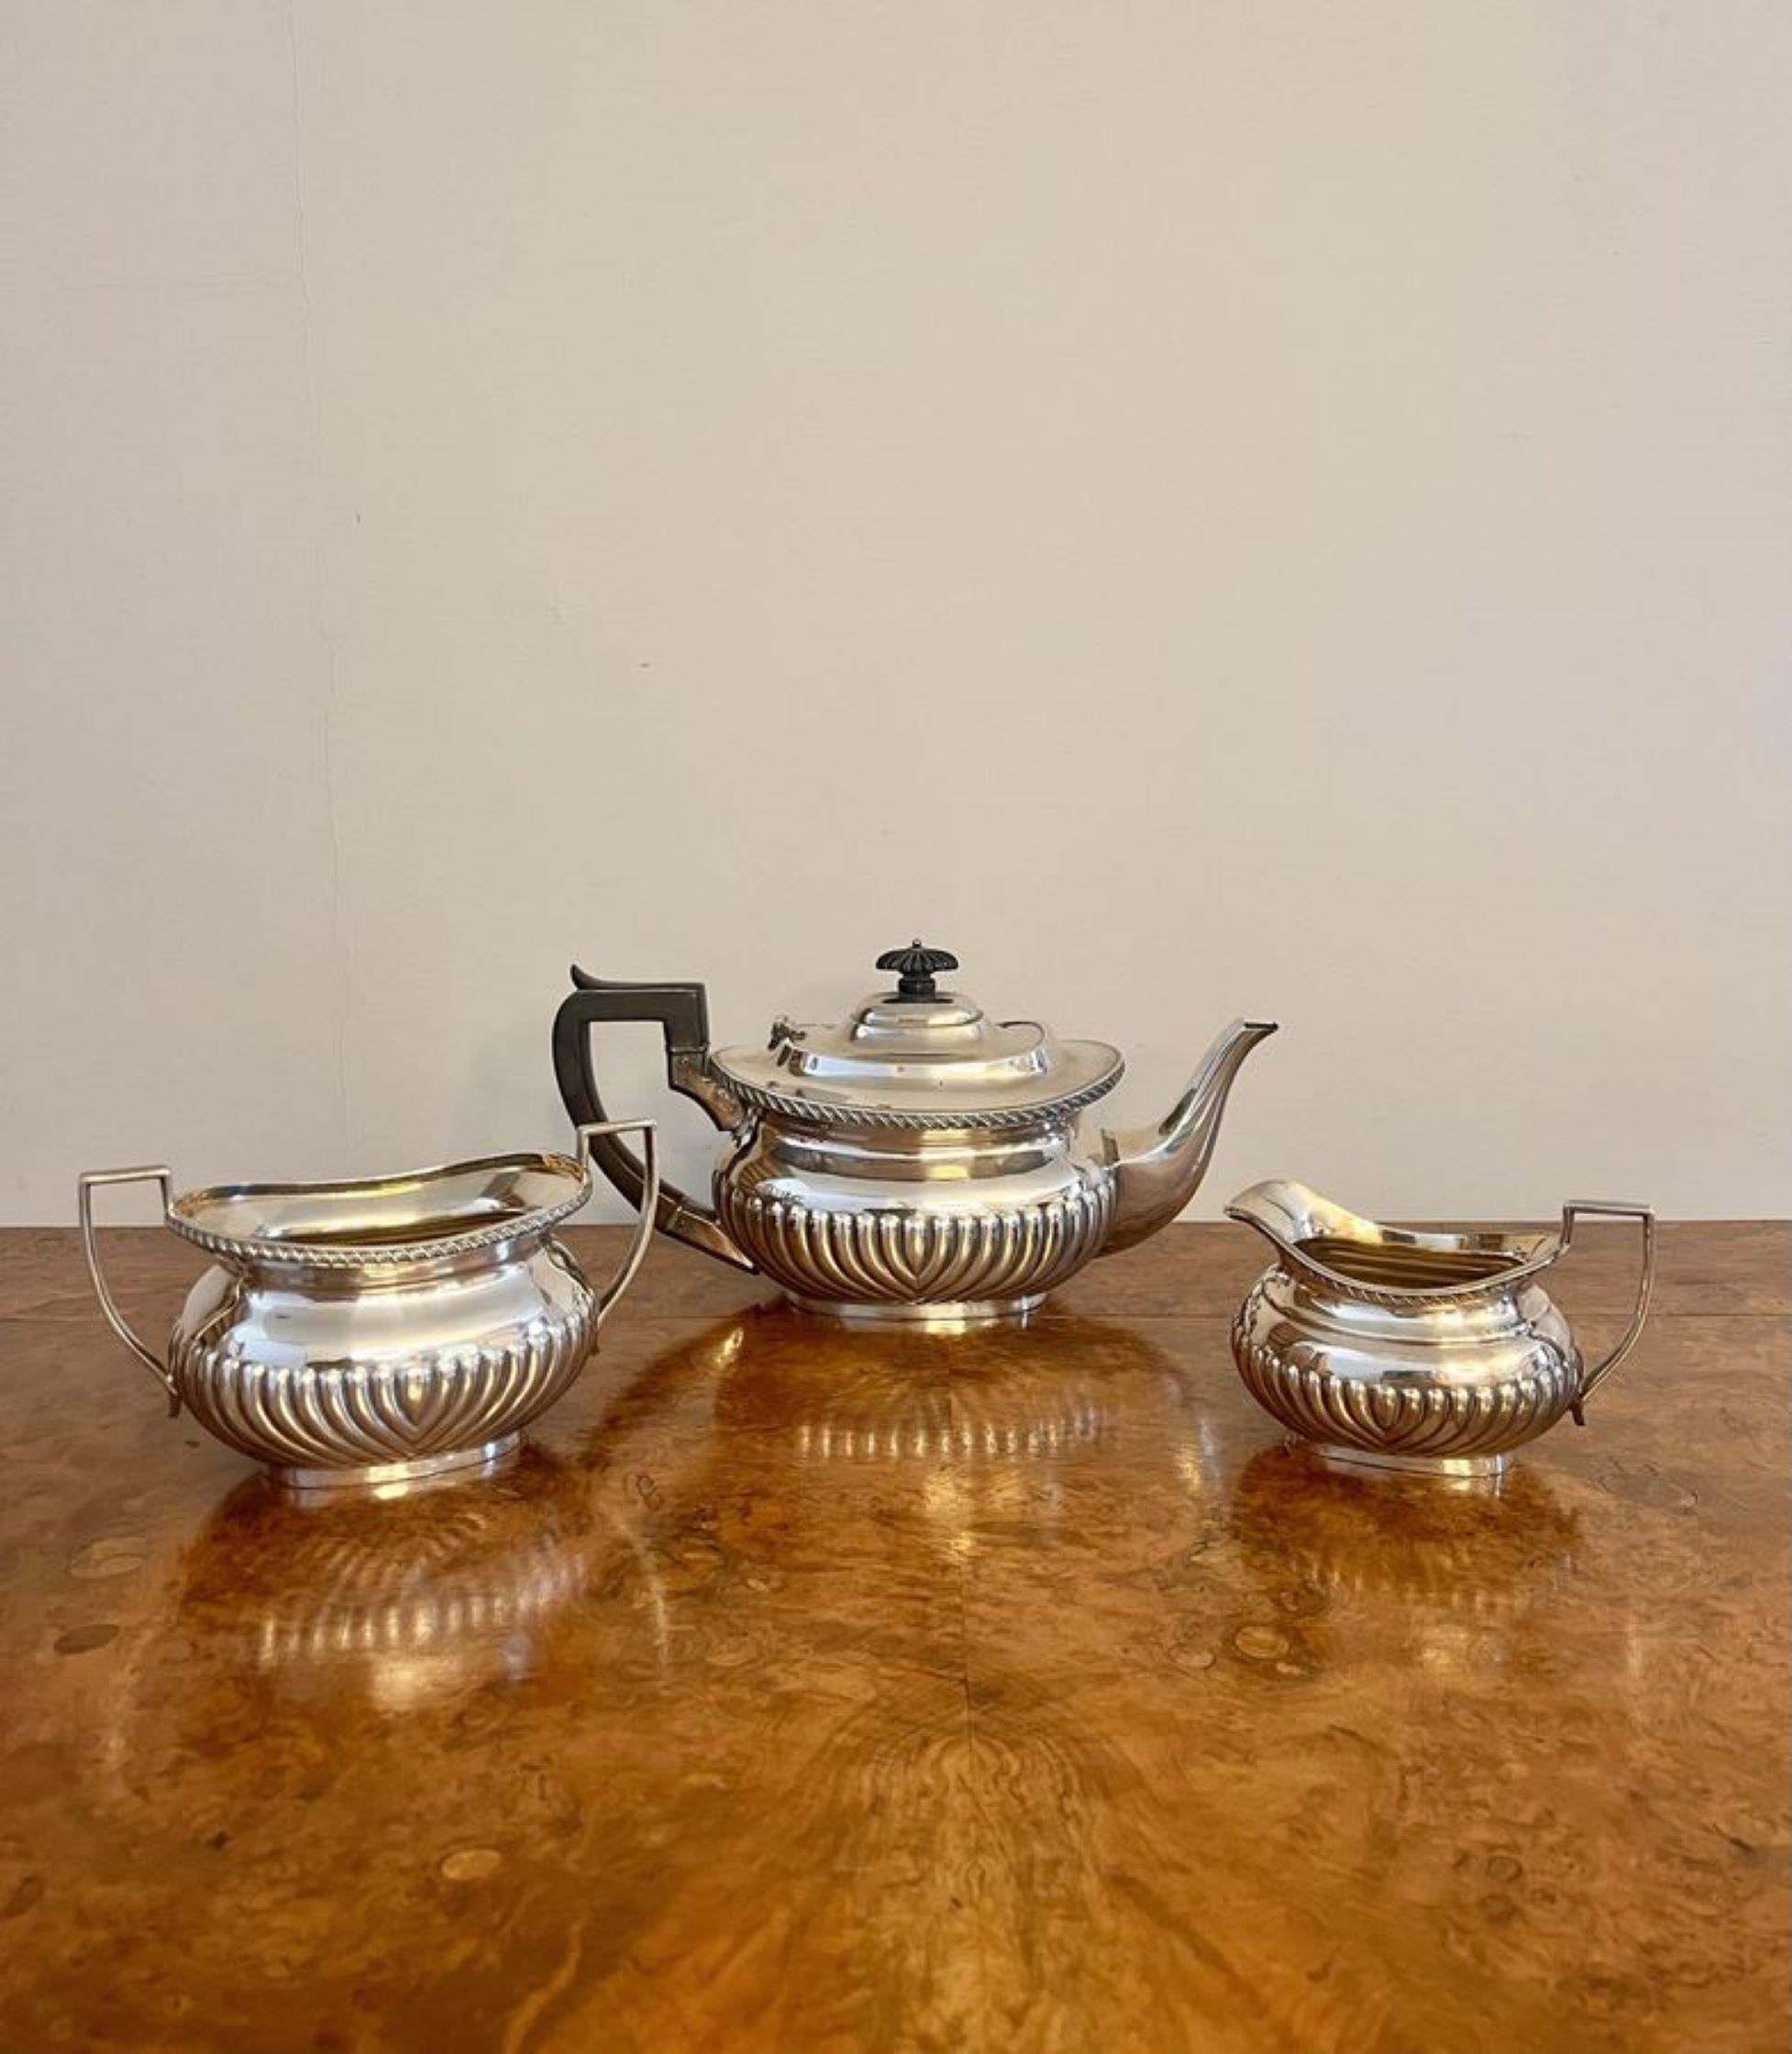 Maravilloso juego de té de tres piezas eduardiano antiguo de calidad con un juego de té de tres piezas bañado en plata eduardiano antiguo de calidad compuesto por una tetera, un azucarero y una lechera. 

D. 1900